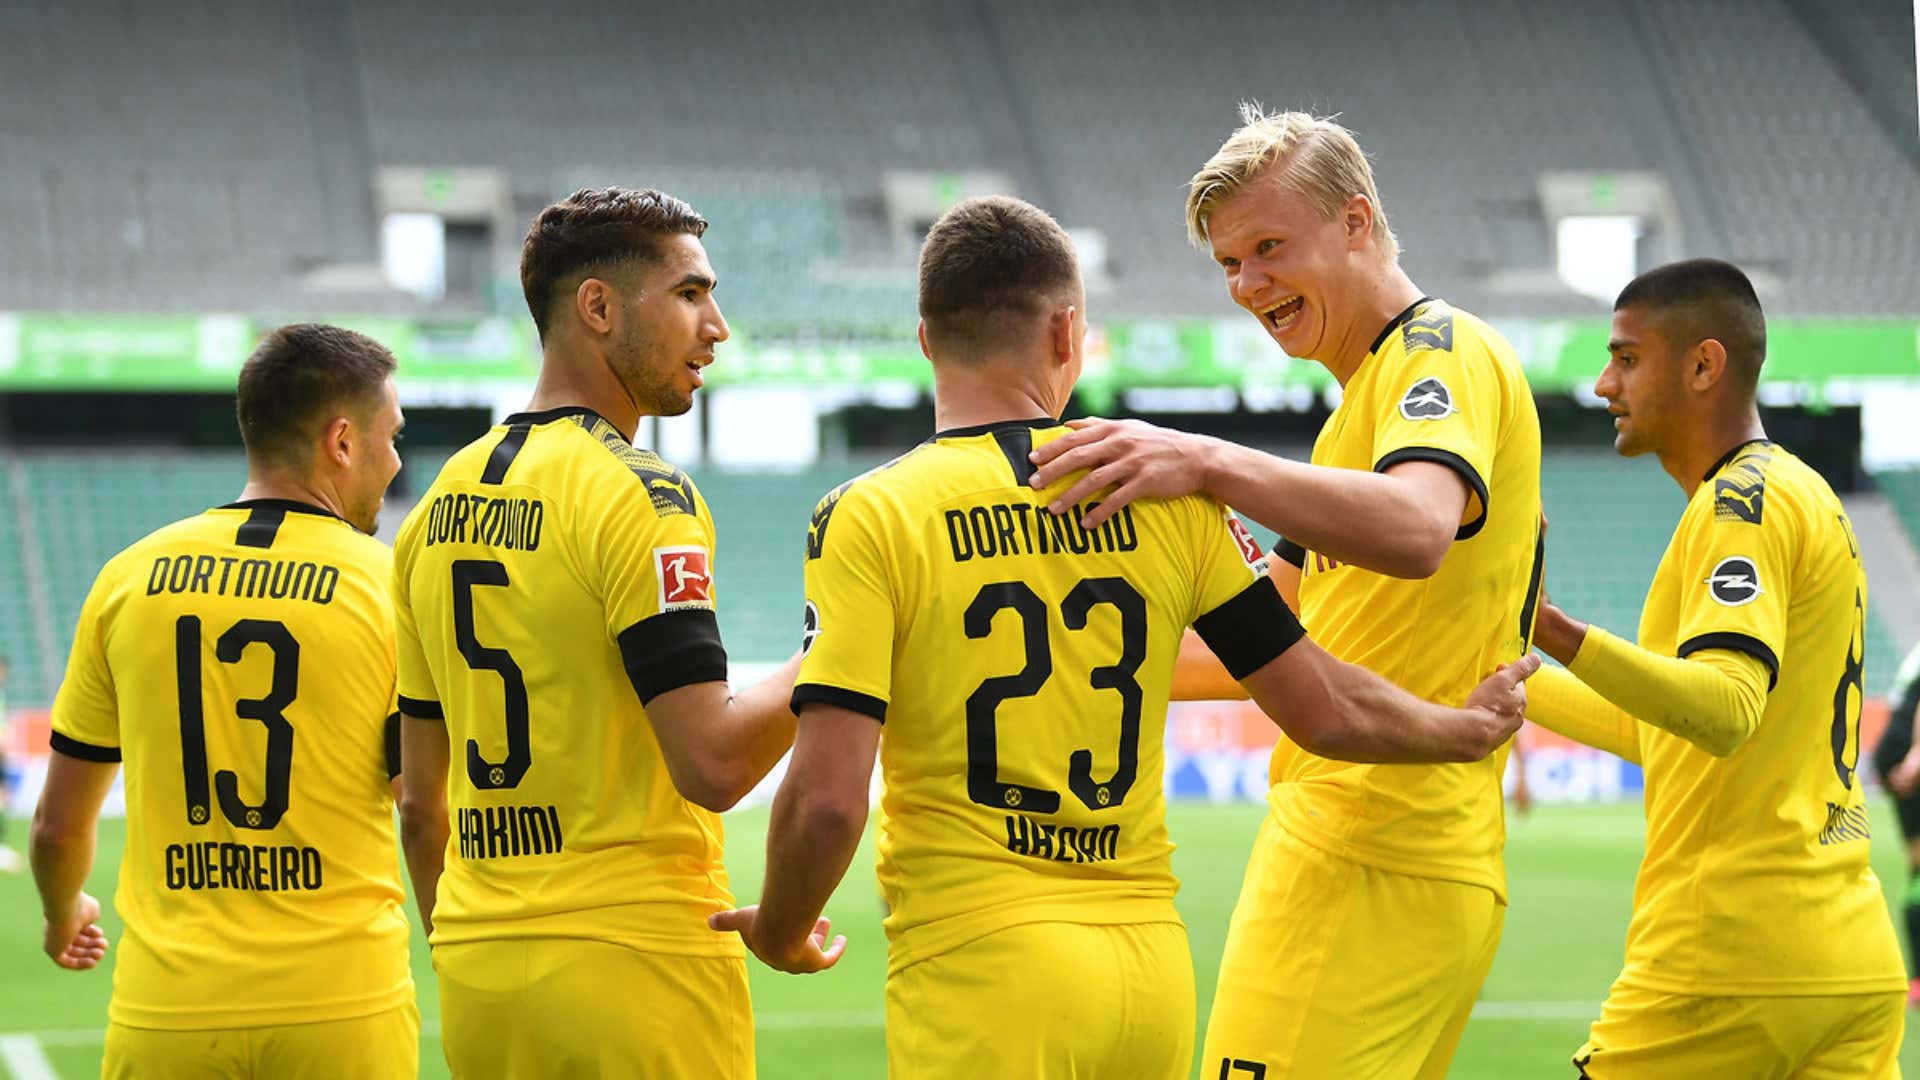 Dortmund goal celebration 23052020